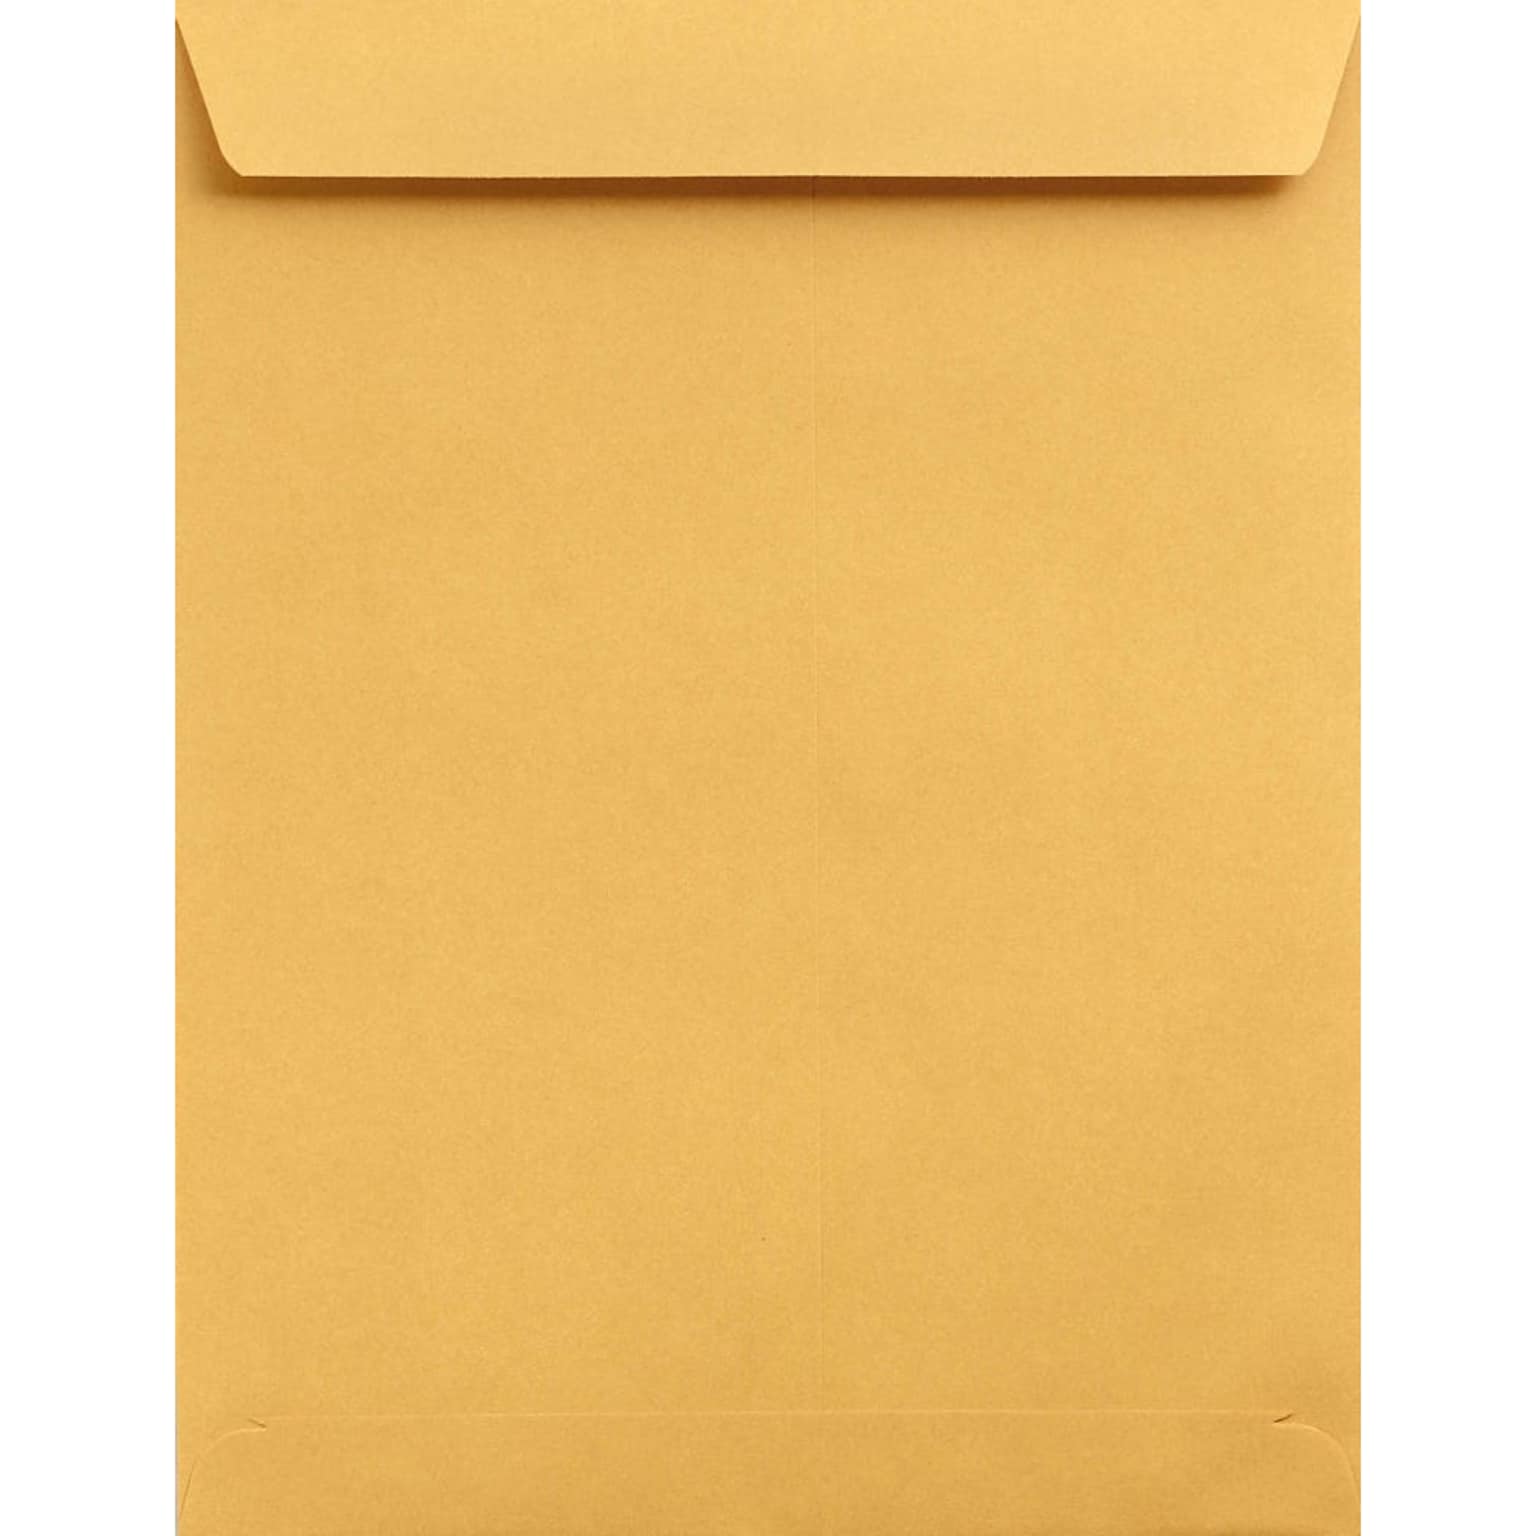 Lux Catalog Jumbo Envelopes Brown Kraft 13 x 19, 500/Pack (22662-500)